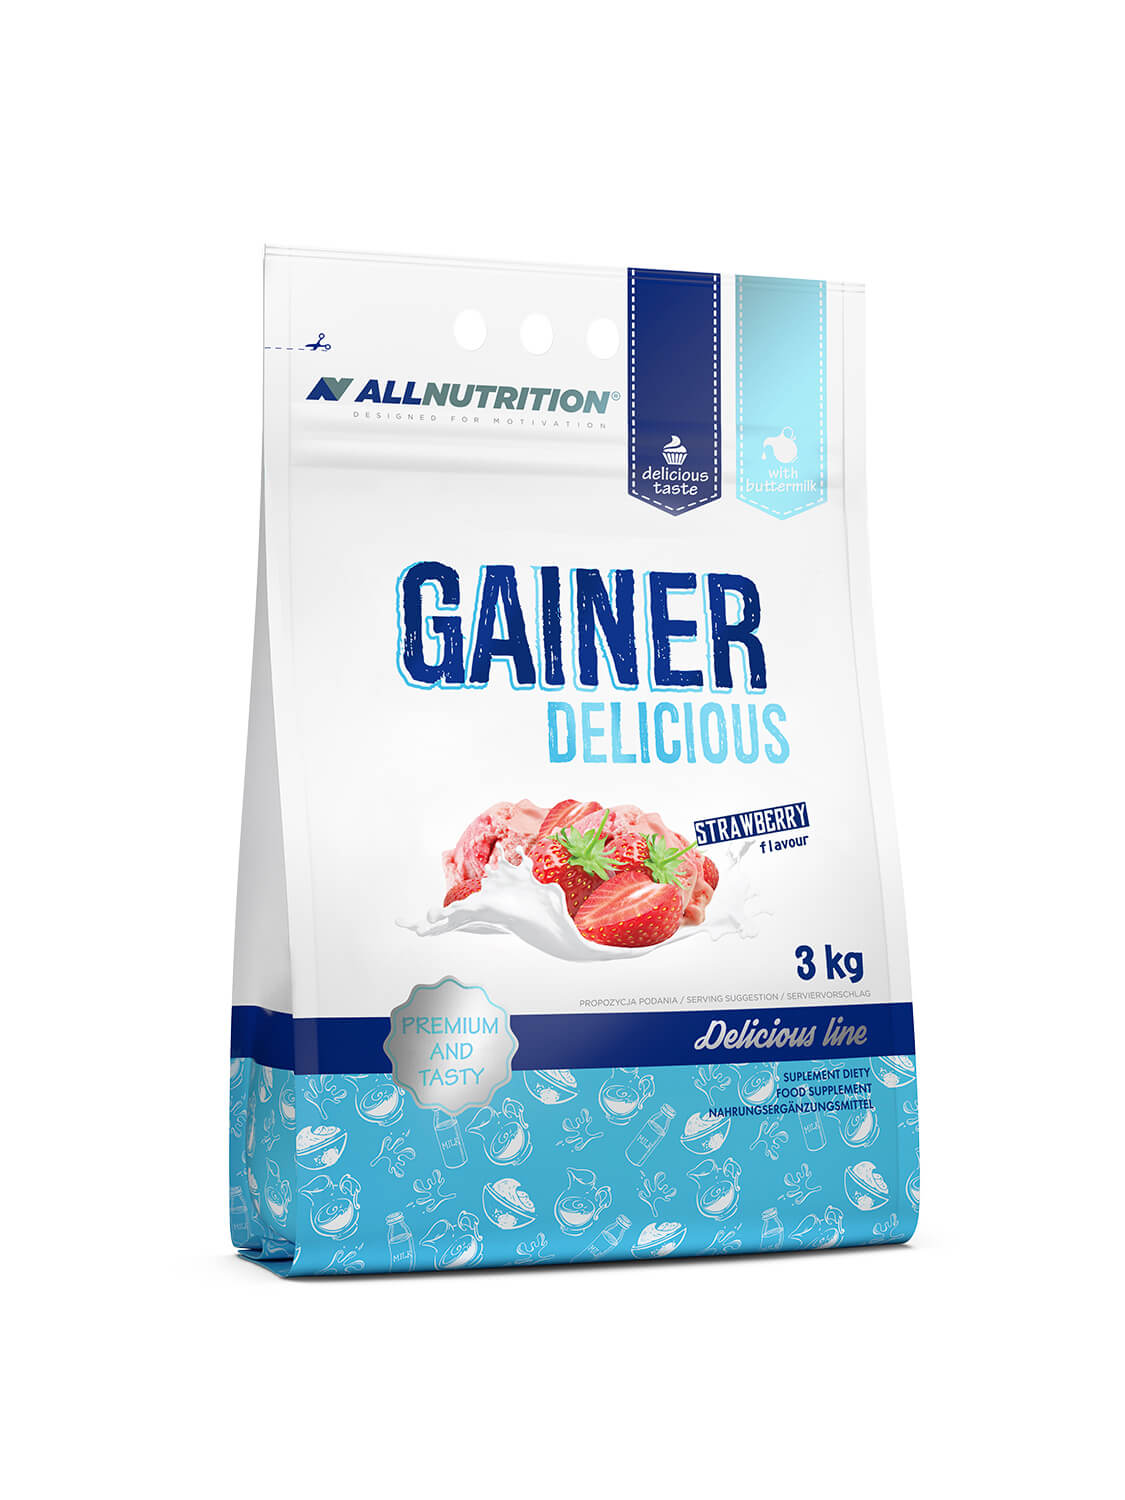 Allnutrition Gainer Delicious - Strawberry Ice Cream 3kg